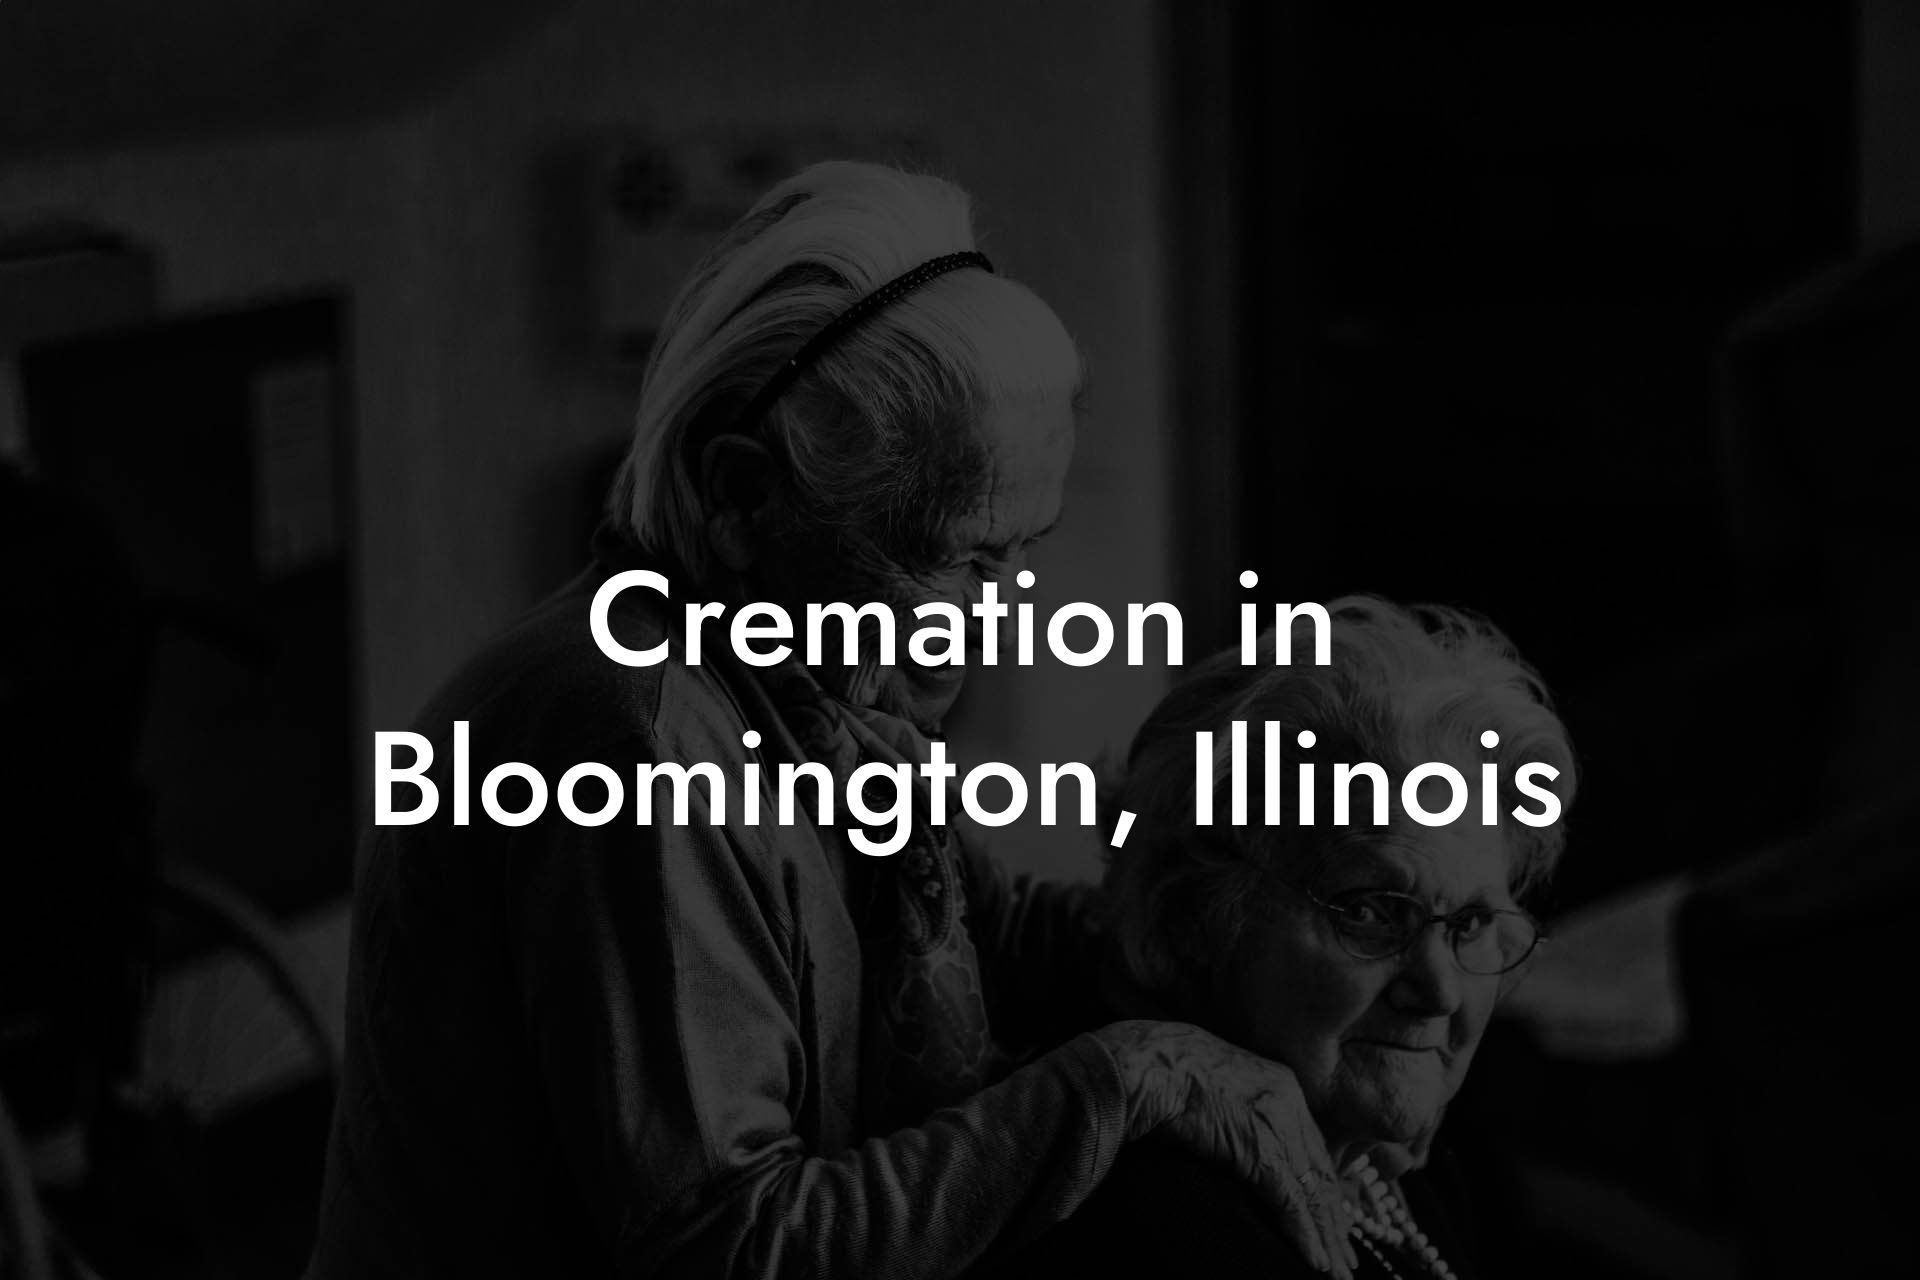 Cremation in Bloomington, Illinois